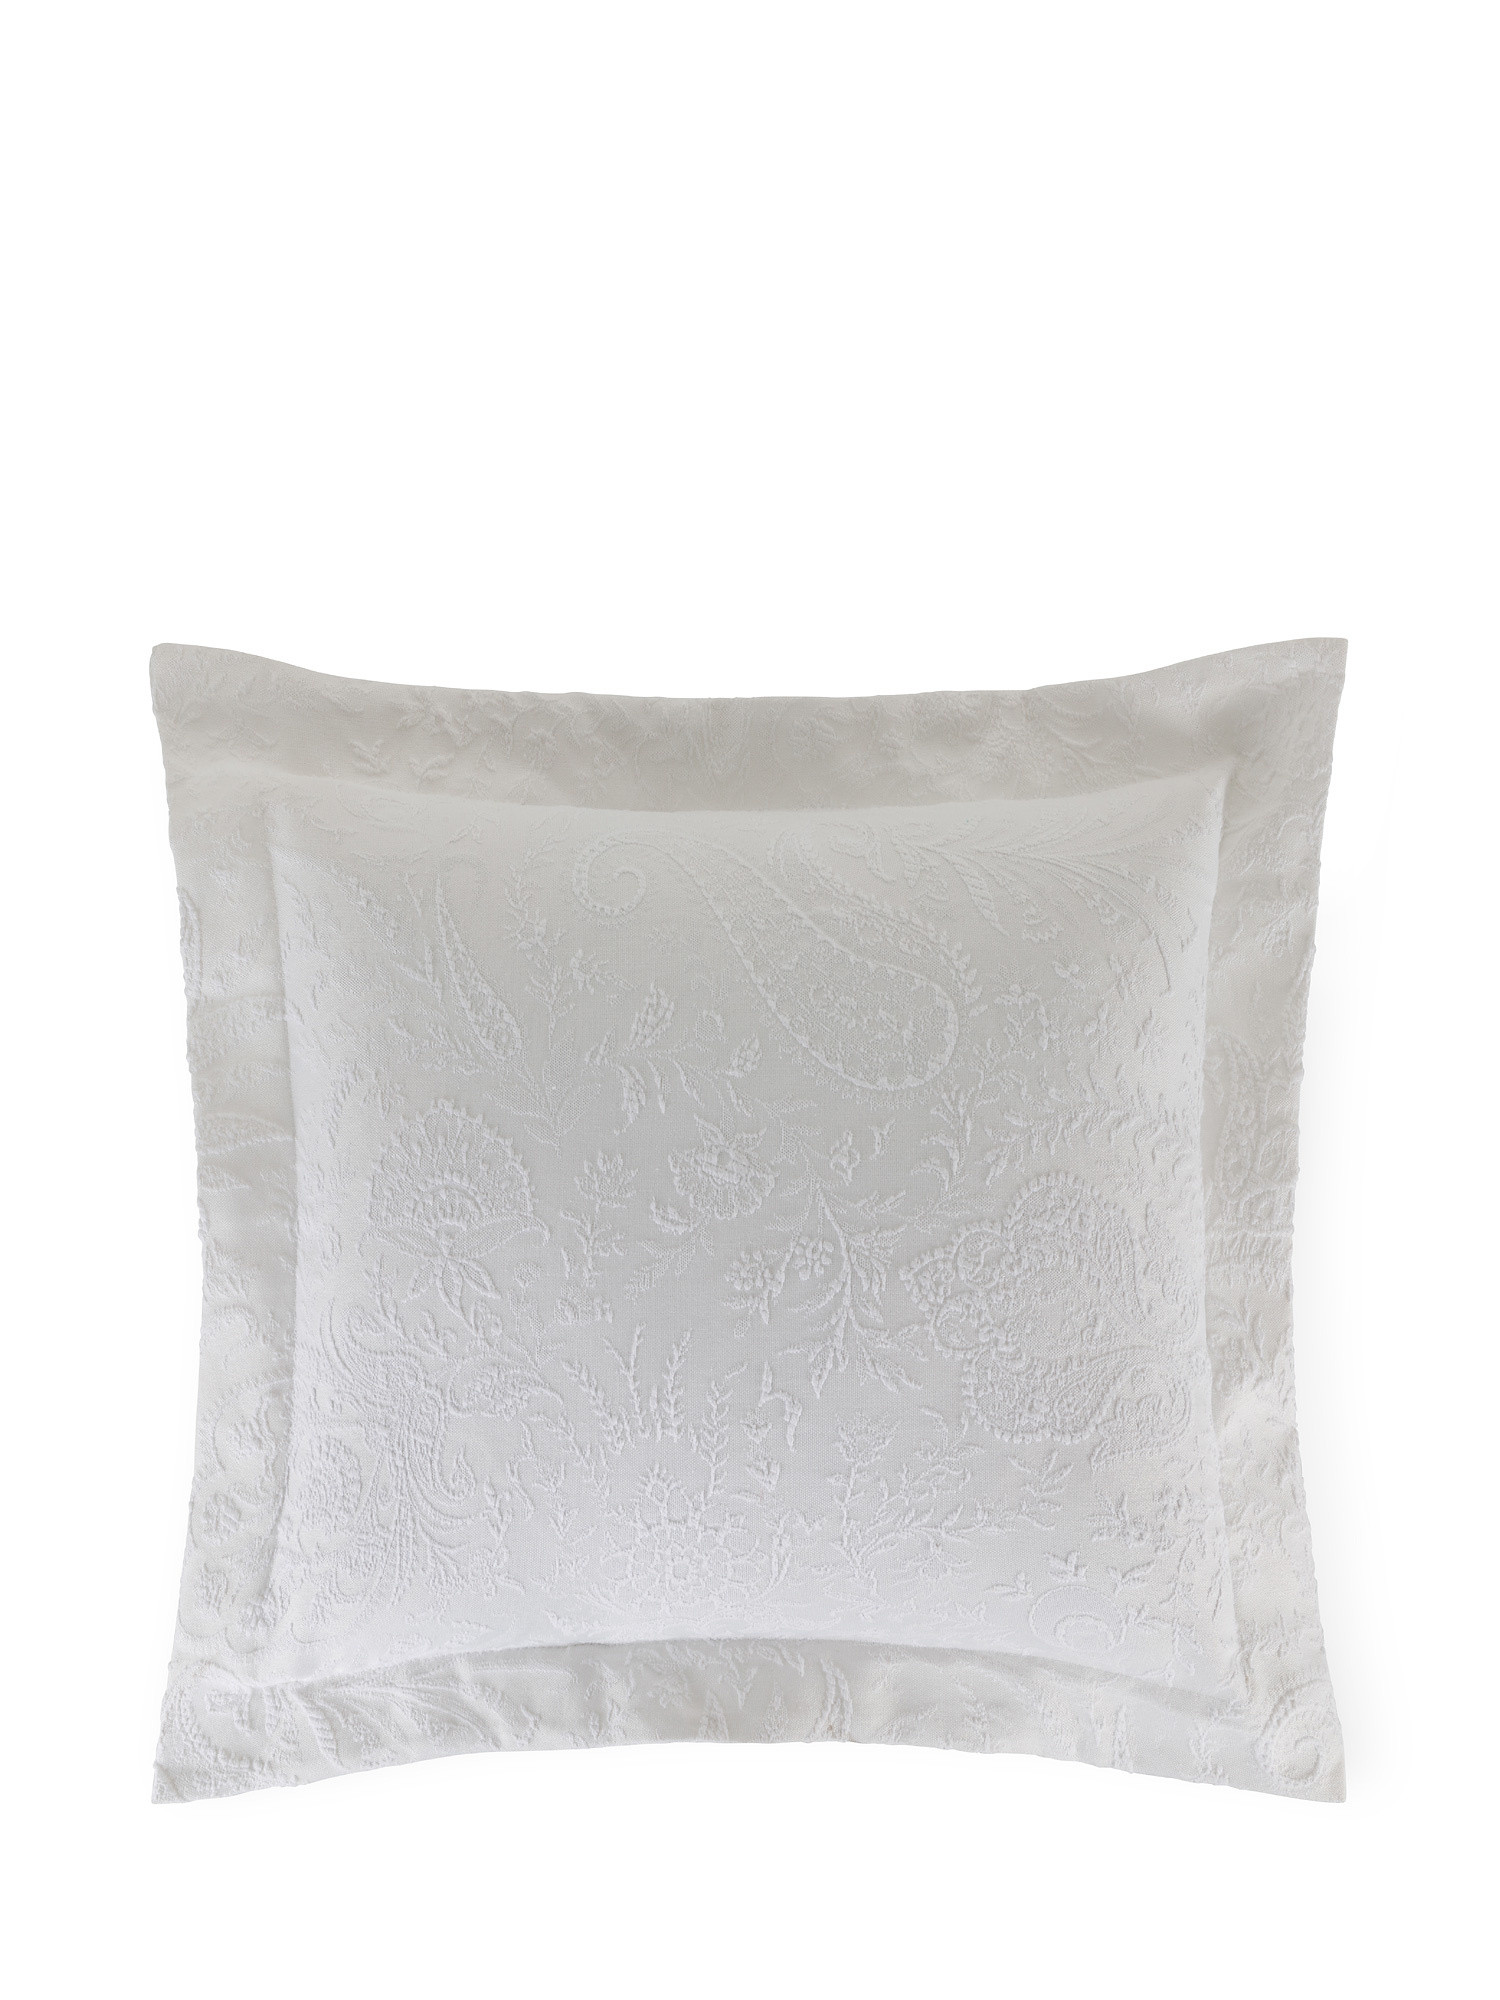 Portofino paisley patterned cushion, White, large image number 0